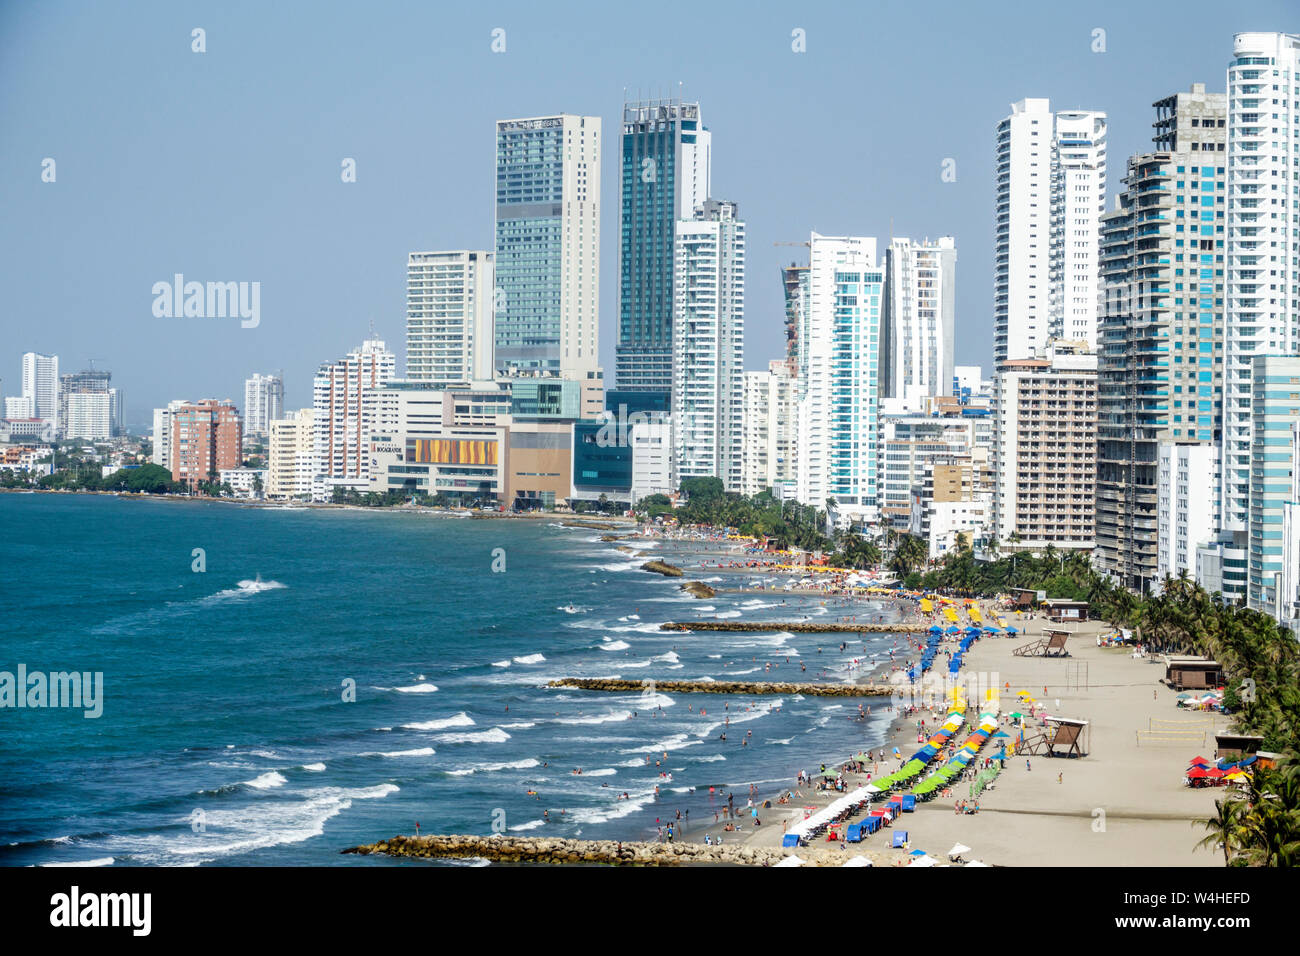 Colombia Cartagena Bocagrande Mar Caribe playa pública costa ciudad horizonte paisaje urbano rascacielos frente al mar de altura se eleva rascacielos sk Foto de stock